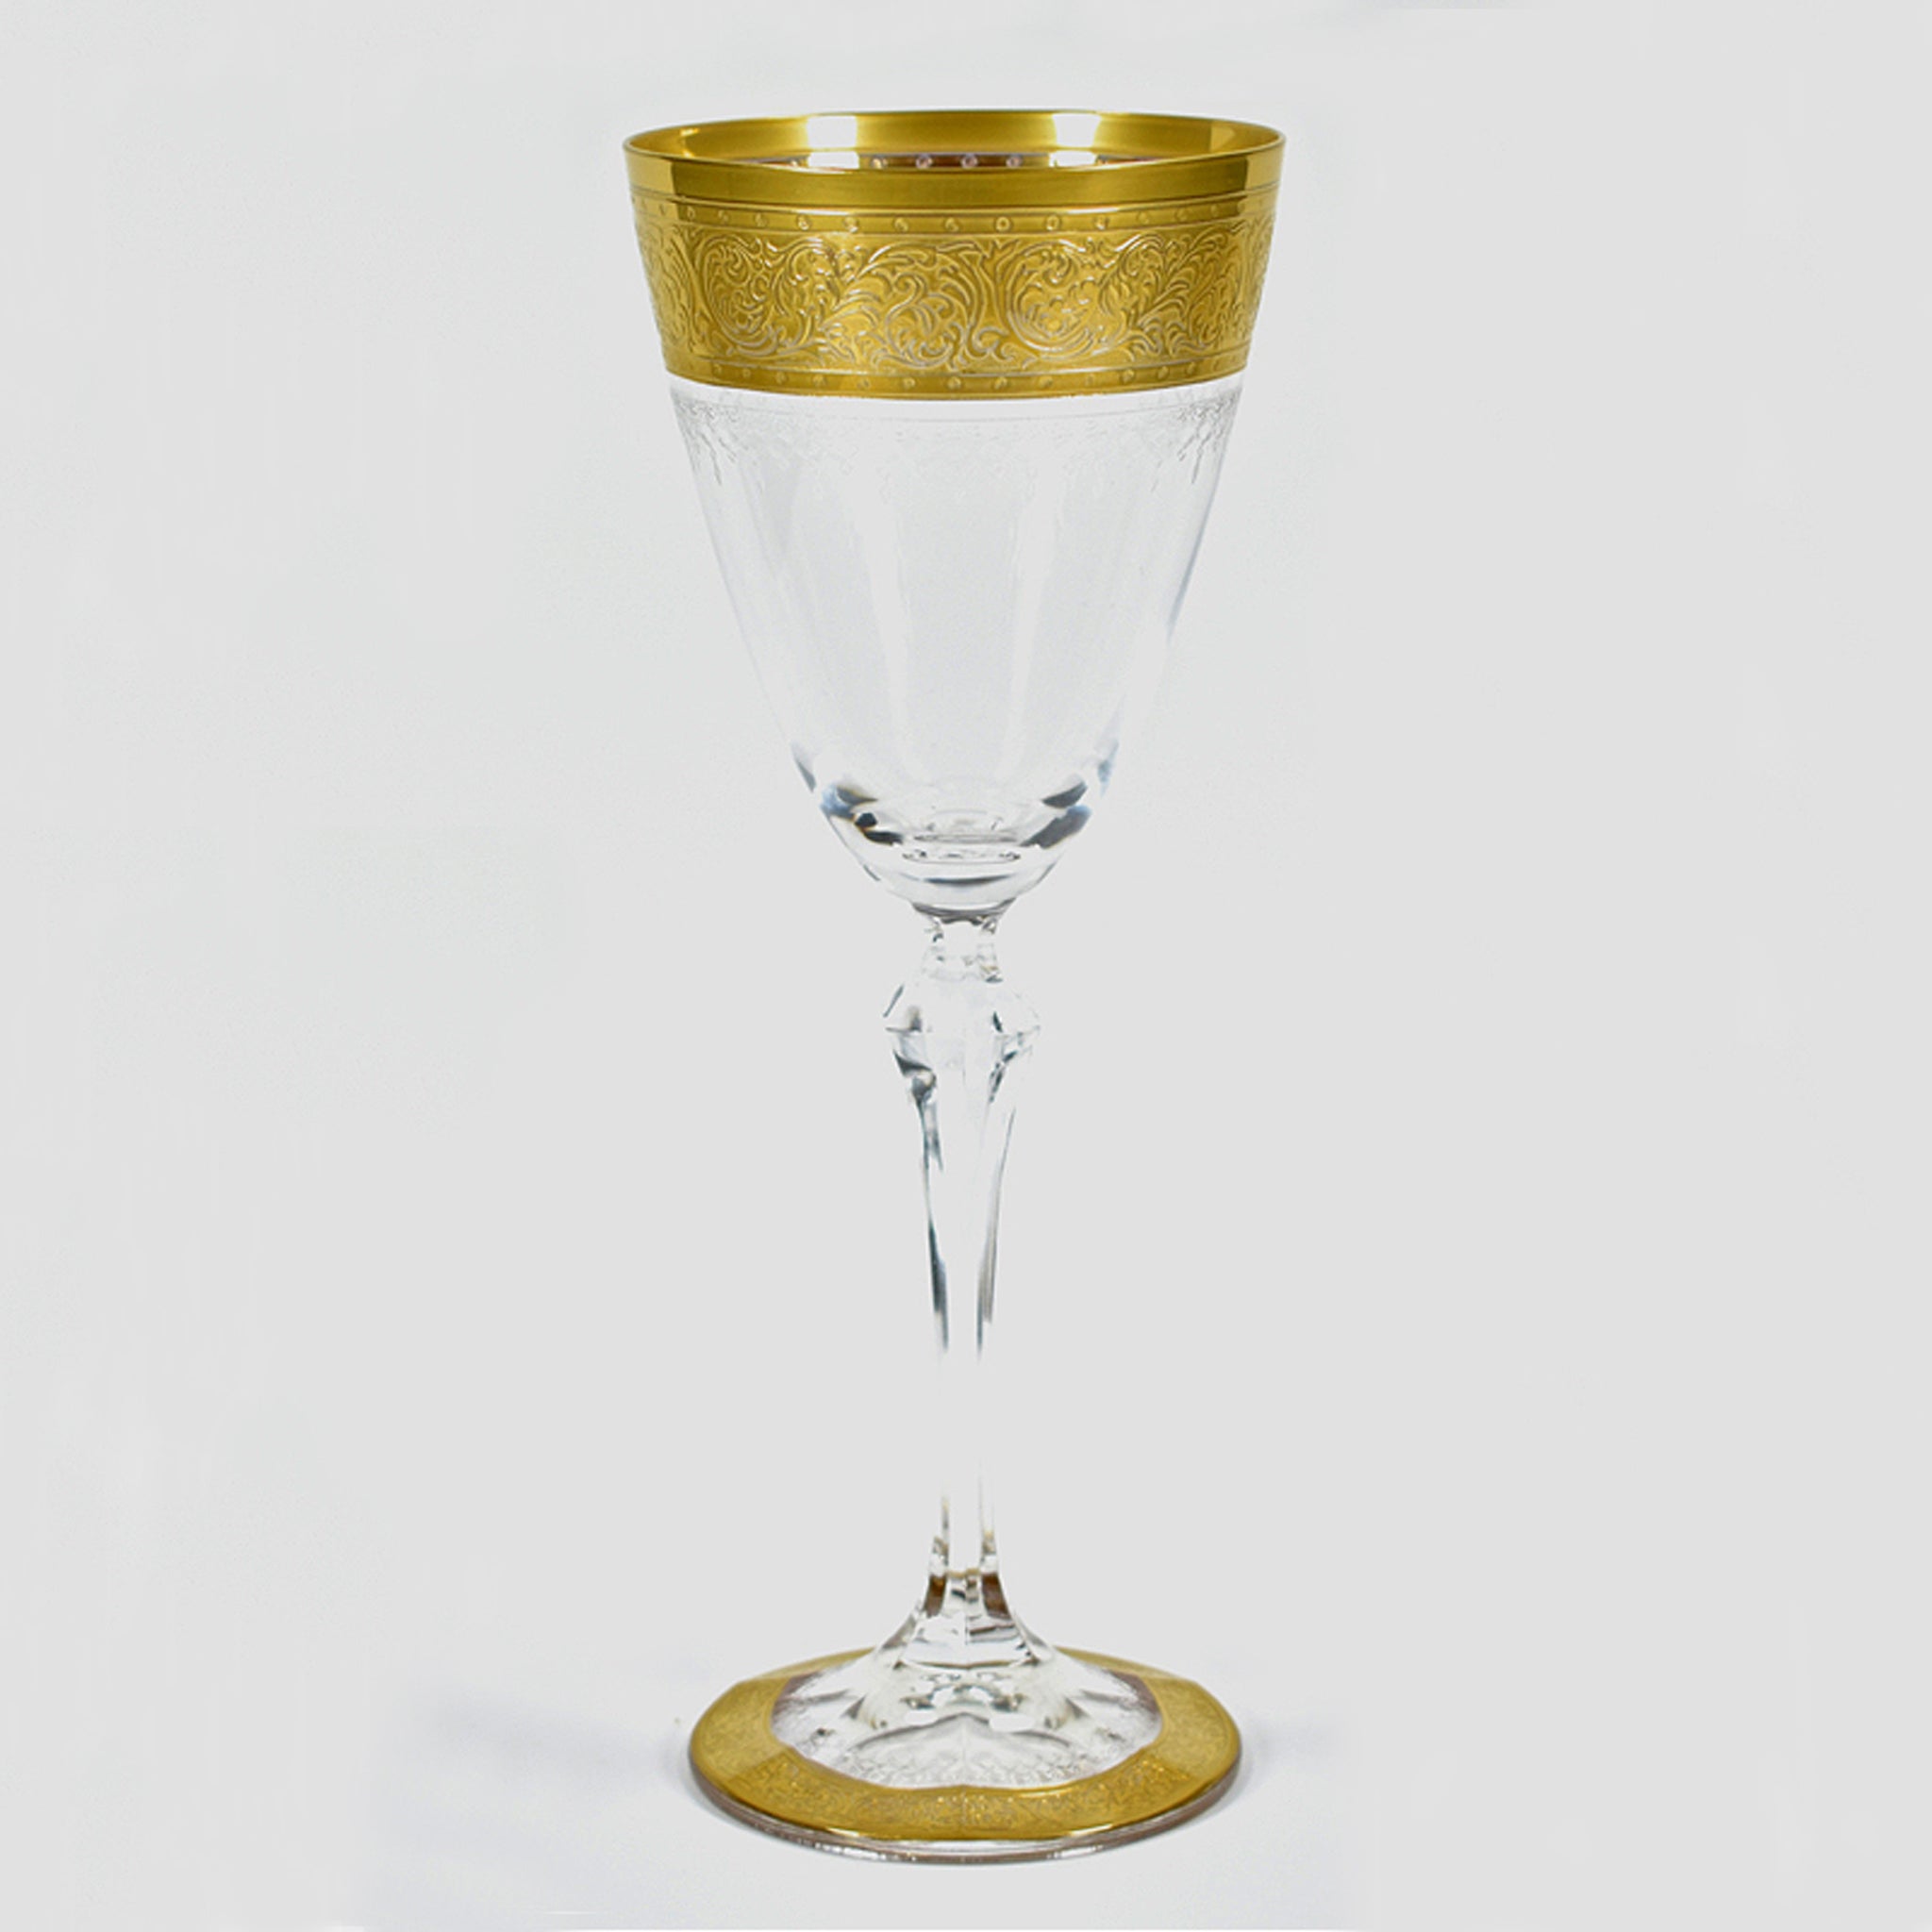 Luxoria-Castello Bianco wijnglas S 190 ml - Schreuder-kraan.shop